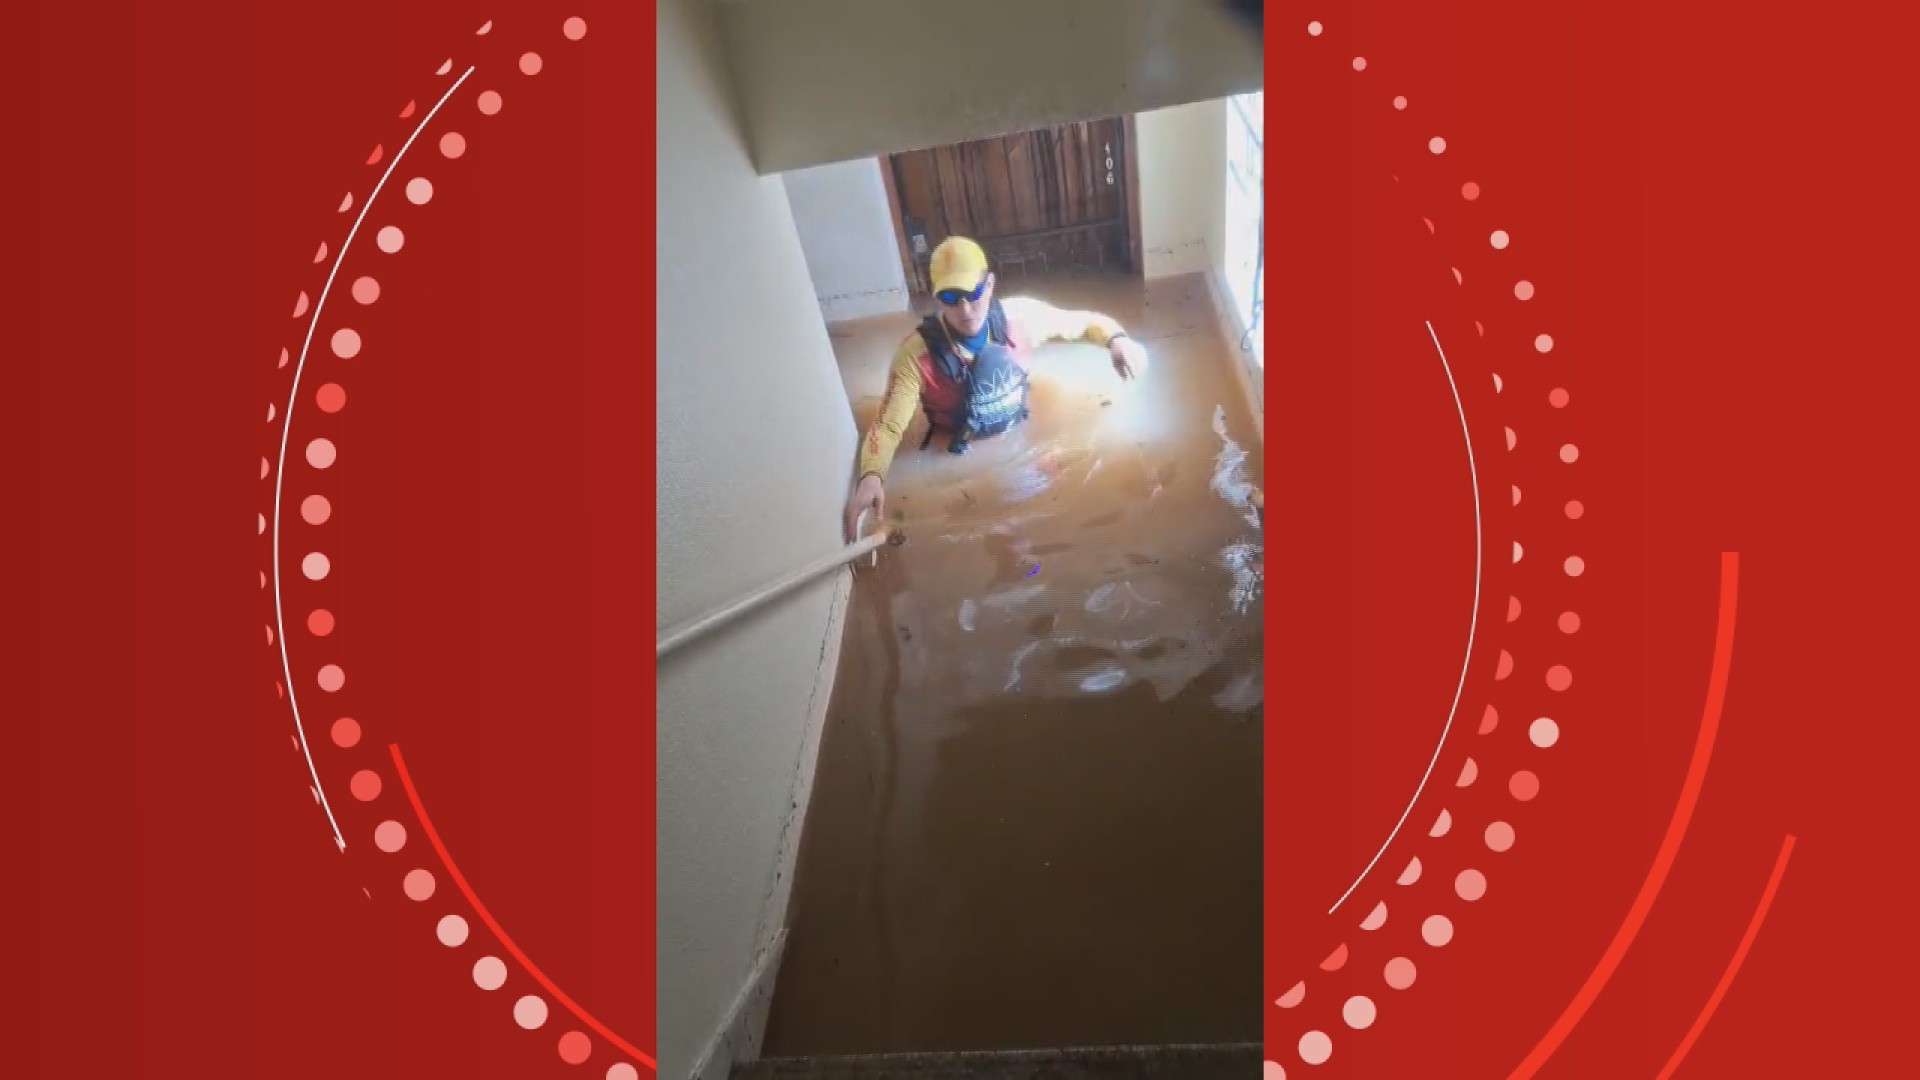 Voluntário do Paraná relata insegurança de vítimas de enchentes no RS para receberem ajuda de desconhecidos: 'Violência grande'